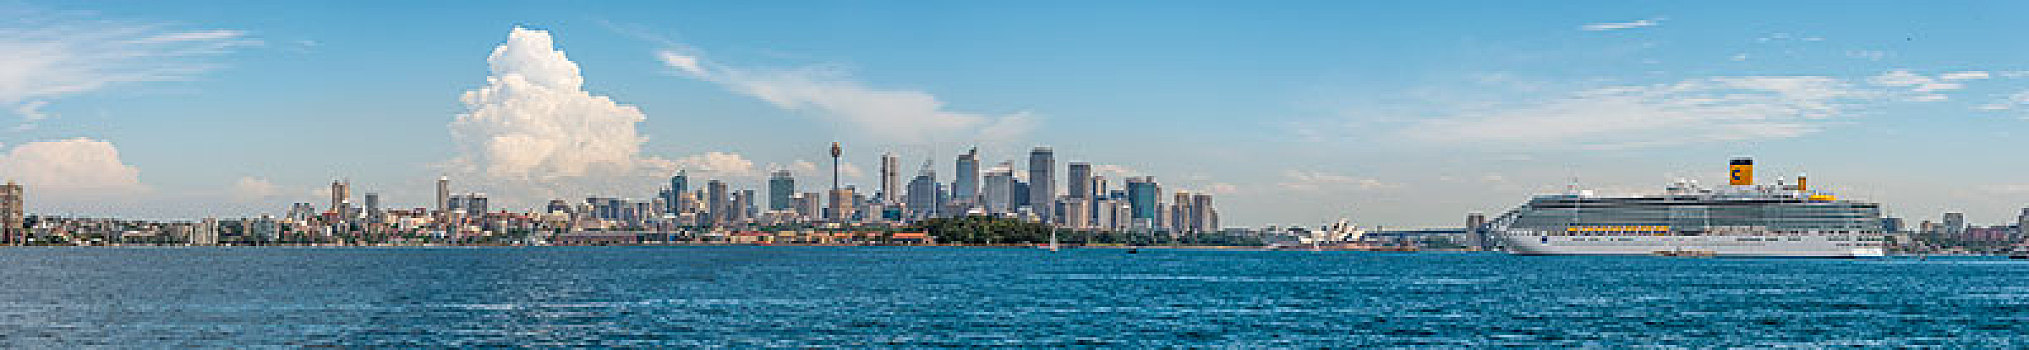 风景,悉尼,天际线,剧院,大,游船,新南威尔士,澳大利亚,大洋洲